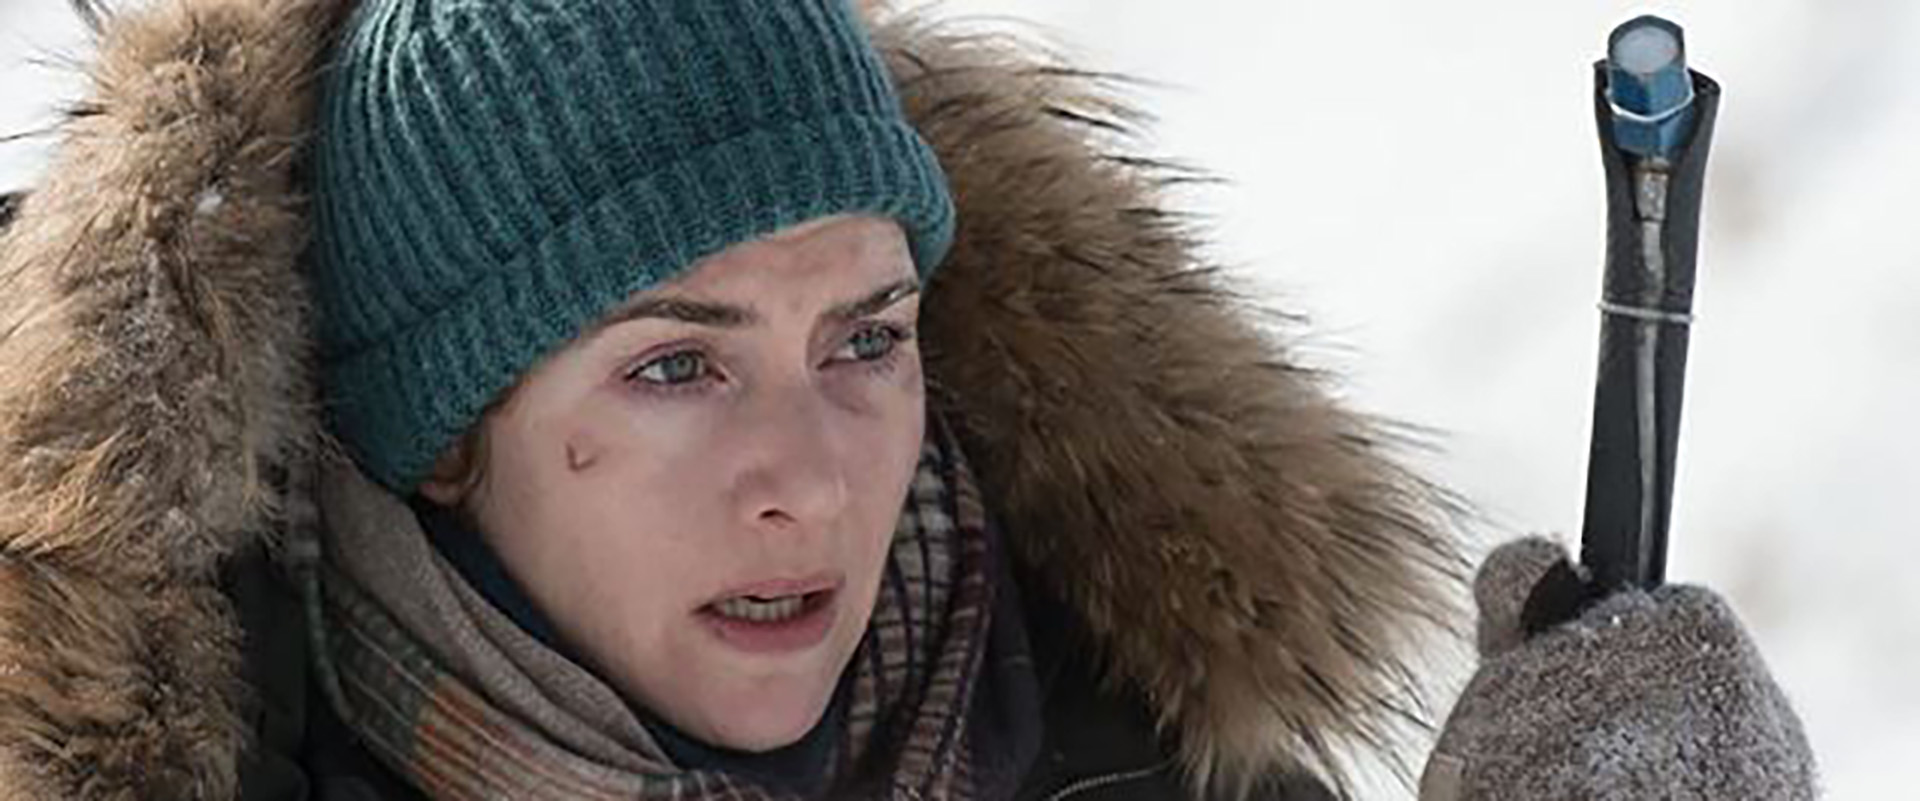 Kate Winlset en "La montaña entre nosotros", film que encuentras en Star+